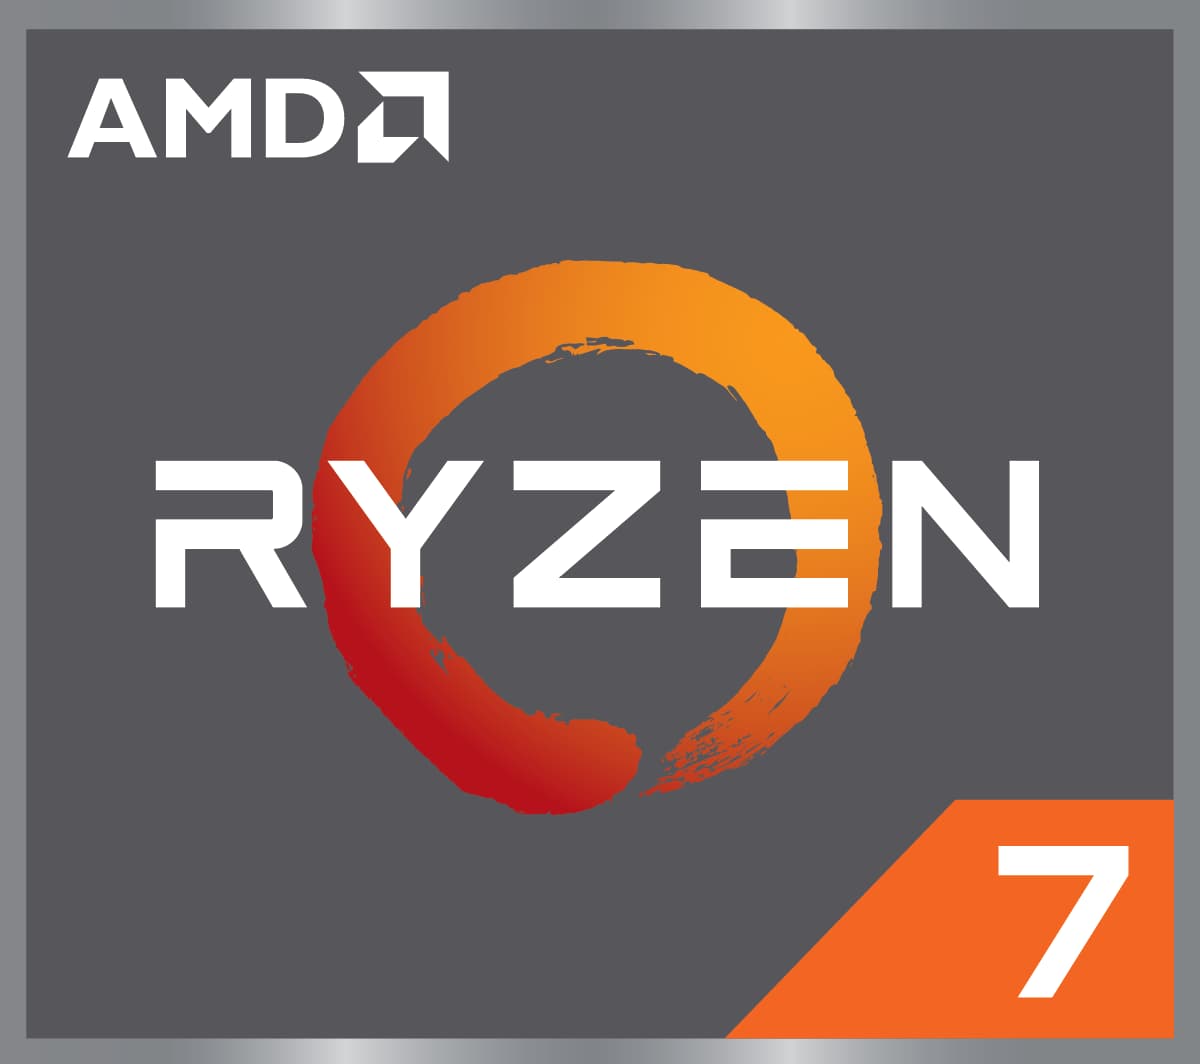 AMD RYZEN 7